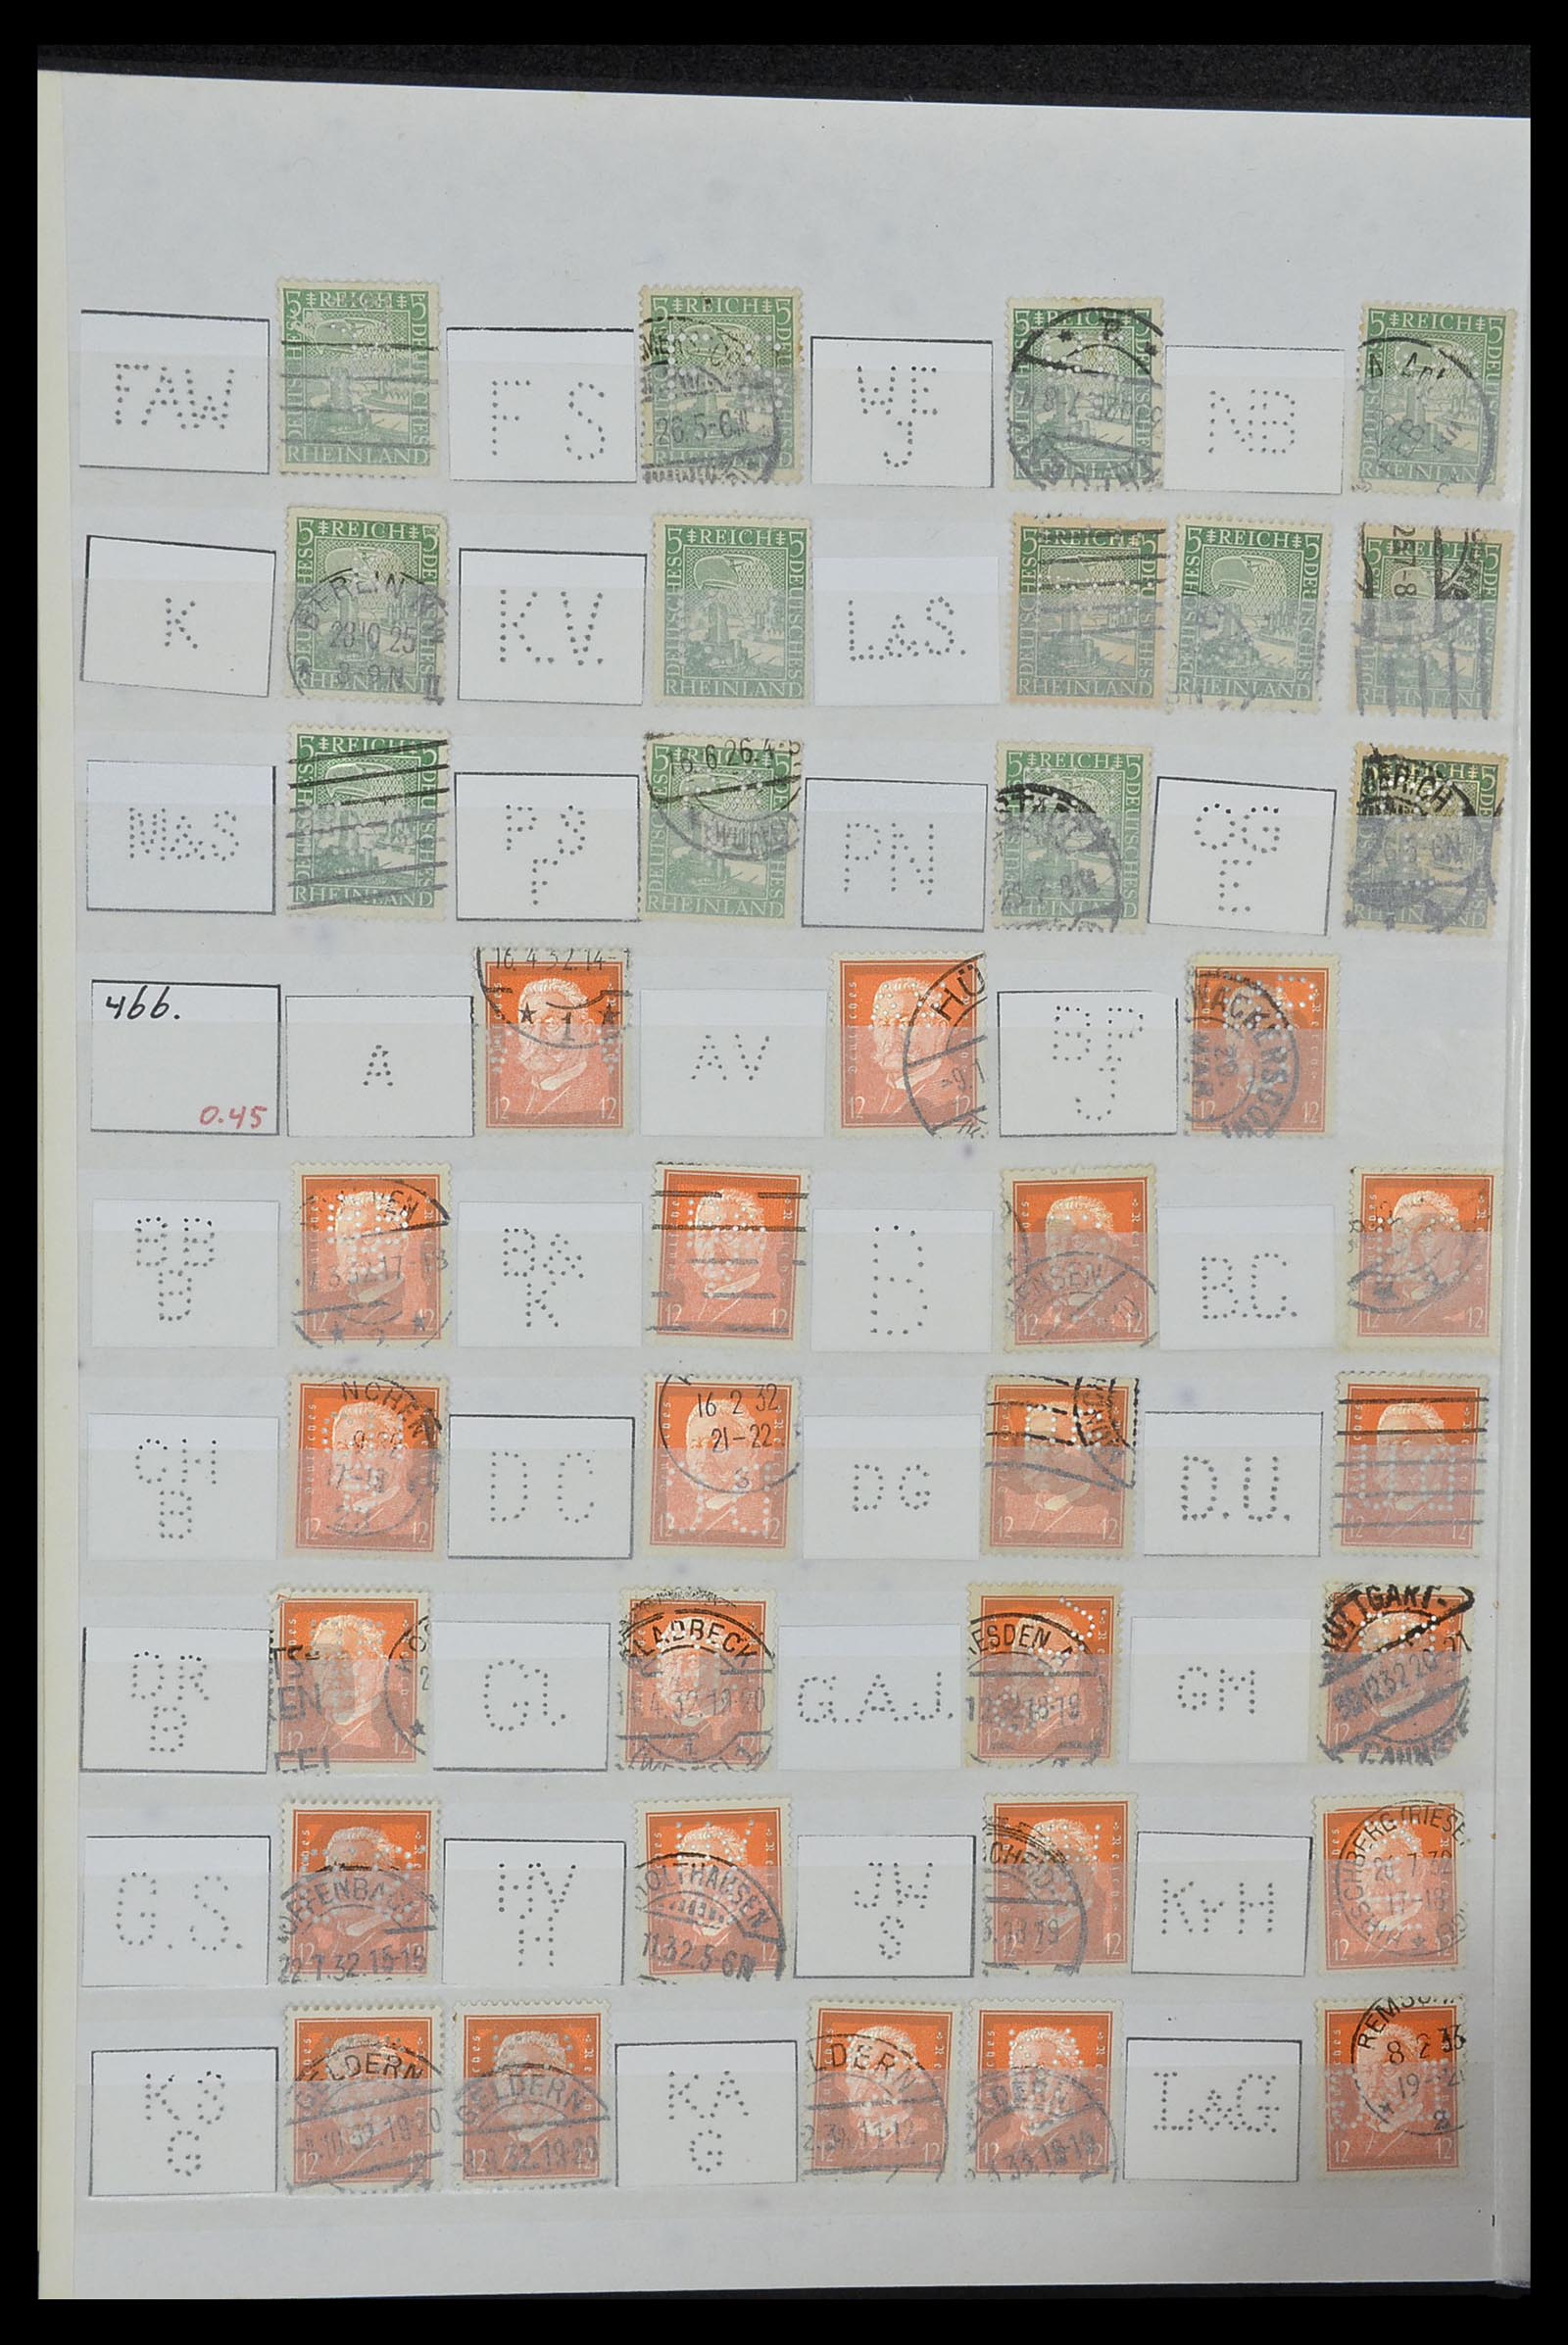 34071 048 - Stamp collection 34071 German Reich perfins 1923-1930.